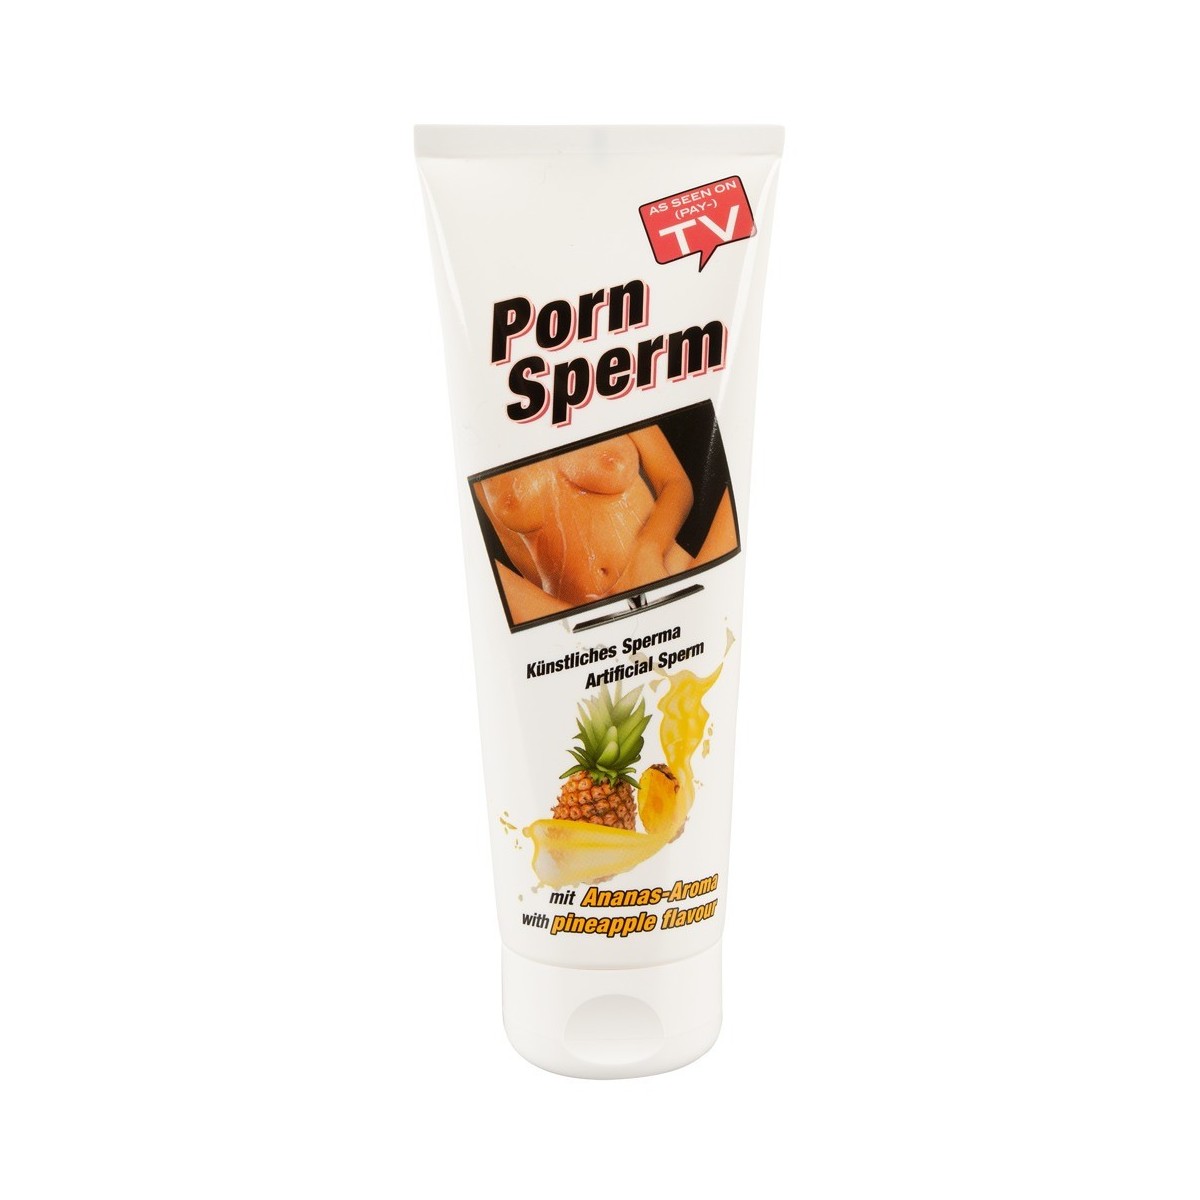 Sperma finto porn sperm 250 ml ananas